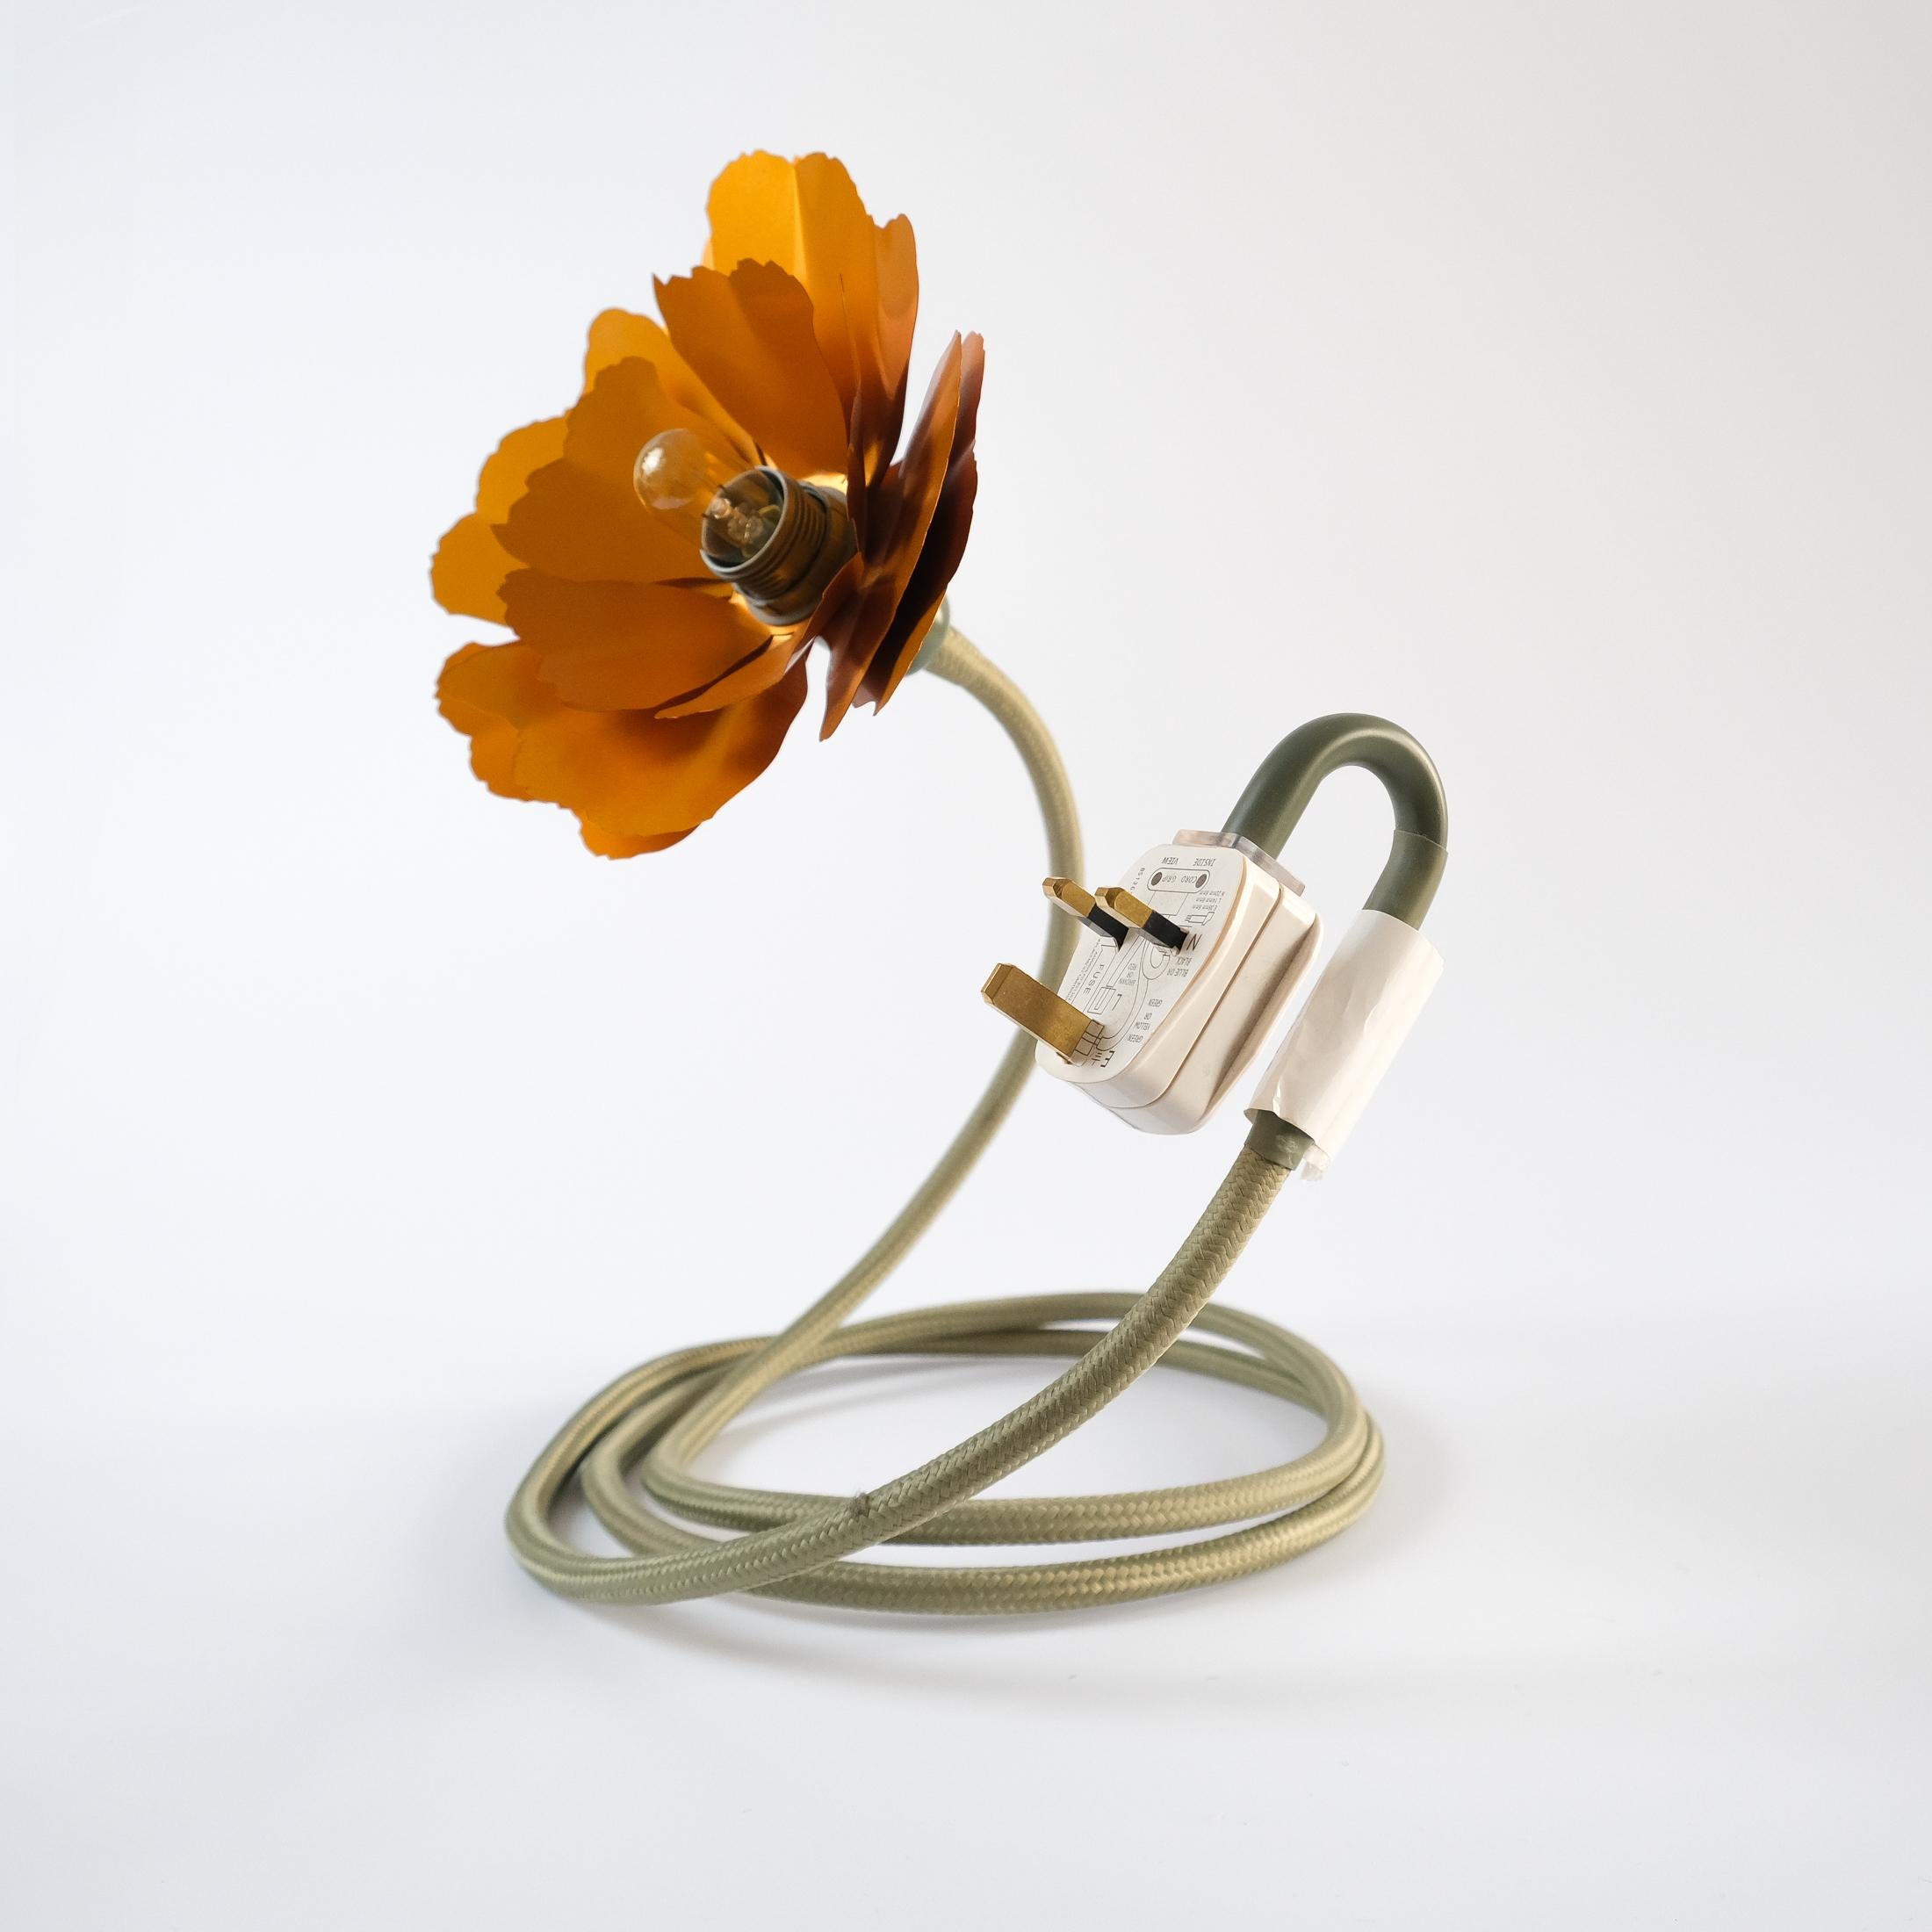 Helena Christensen's Flexible Flower Lamp for Habitat “V.I.P” Collection, 2004 For Sale 9